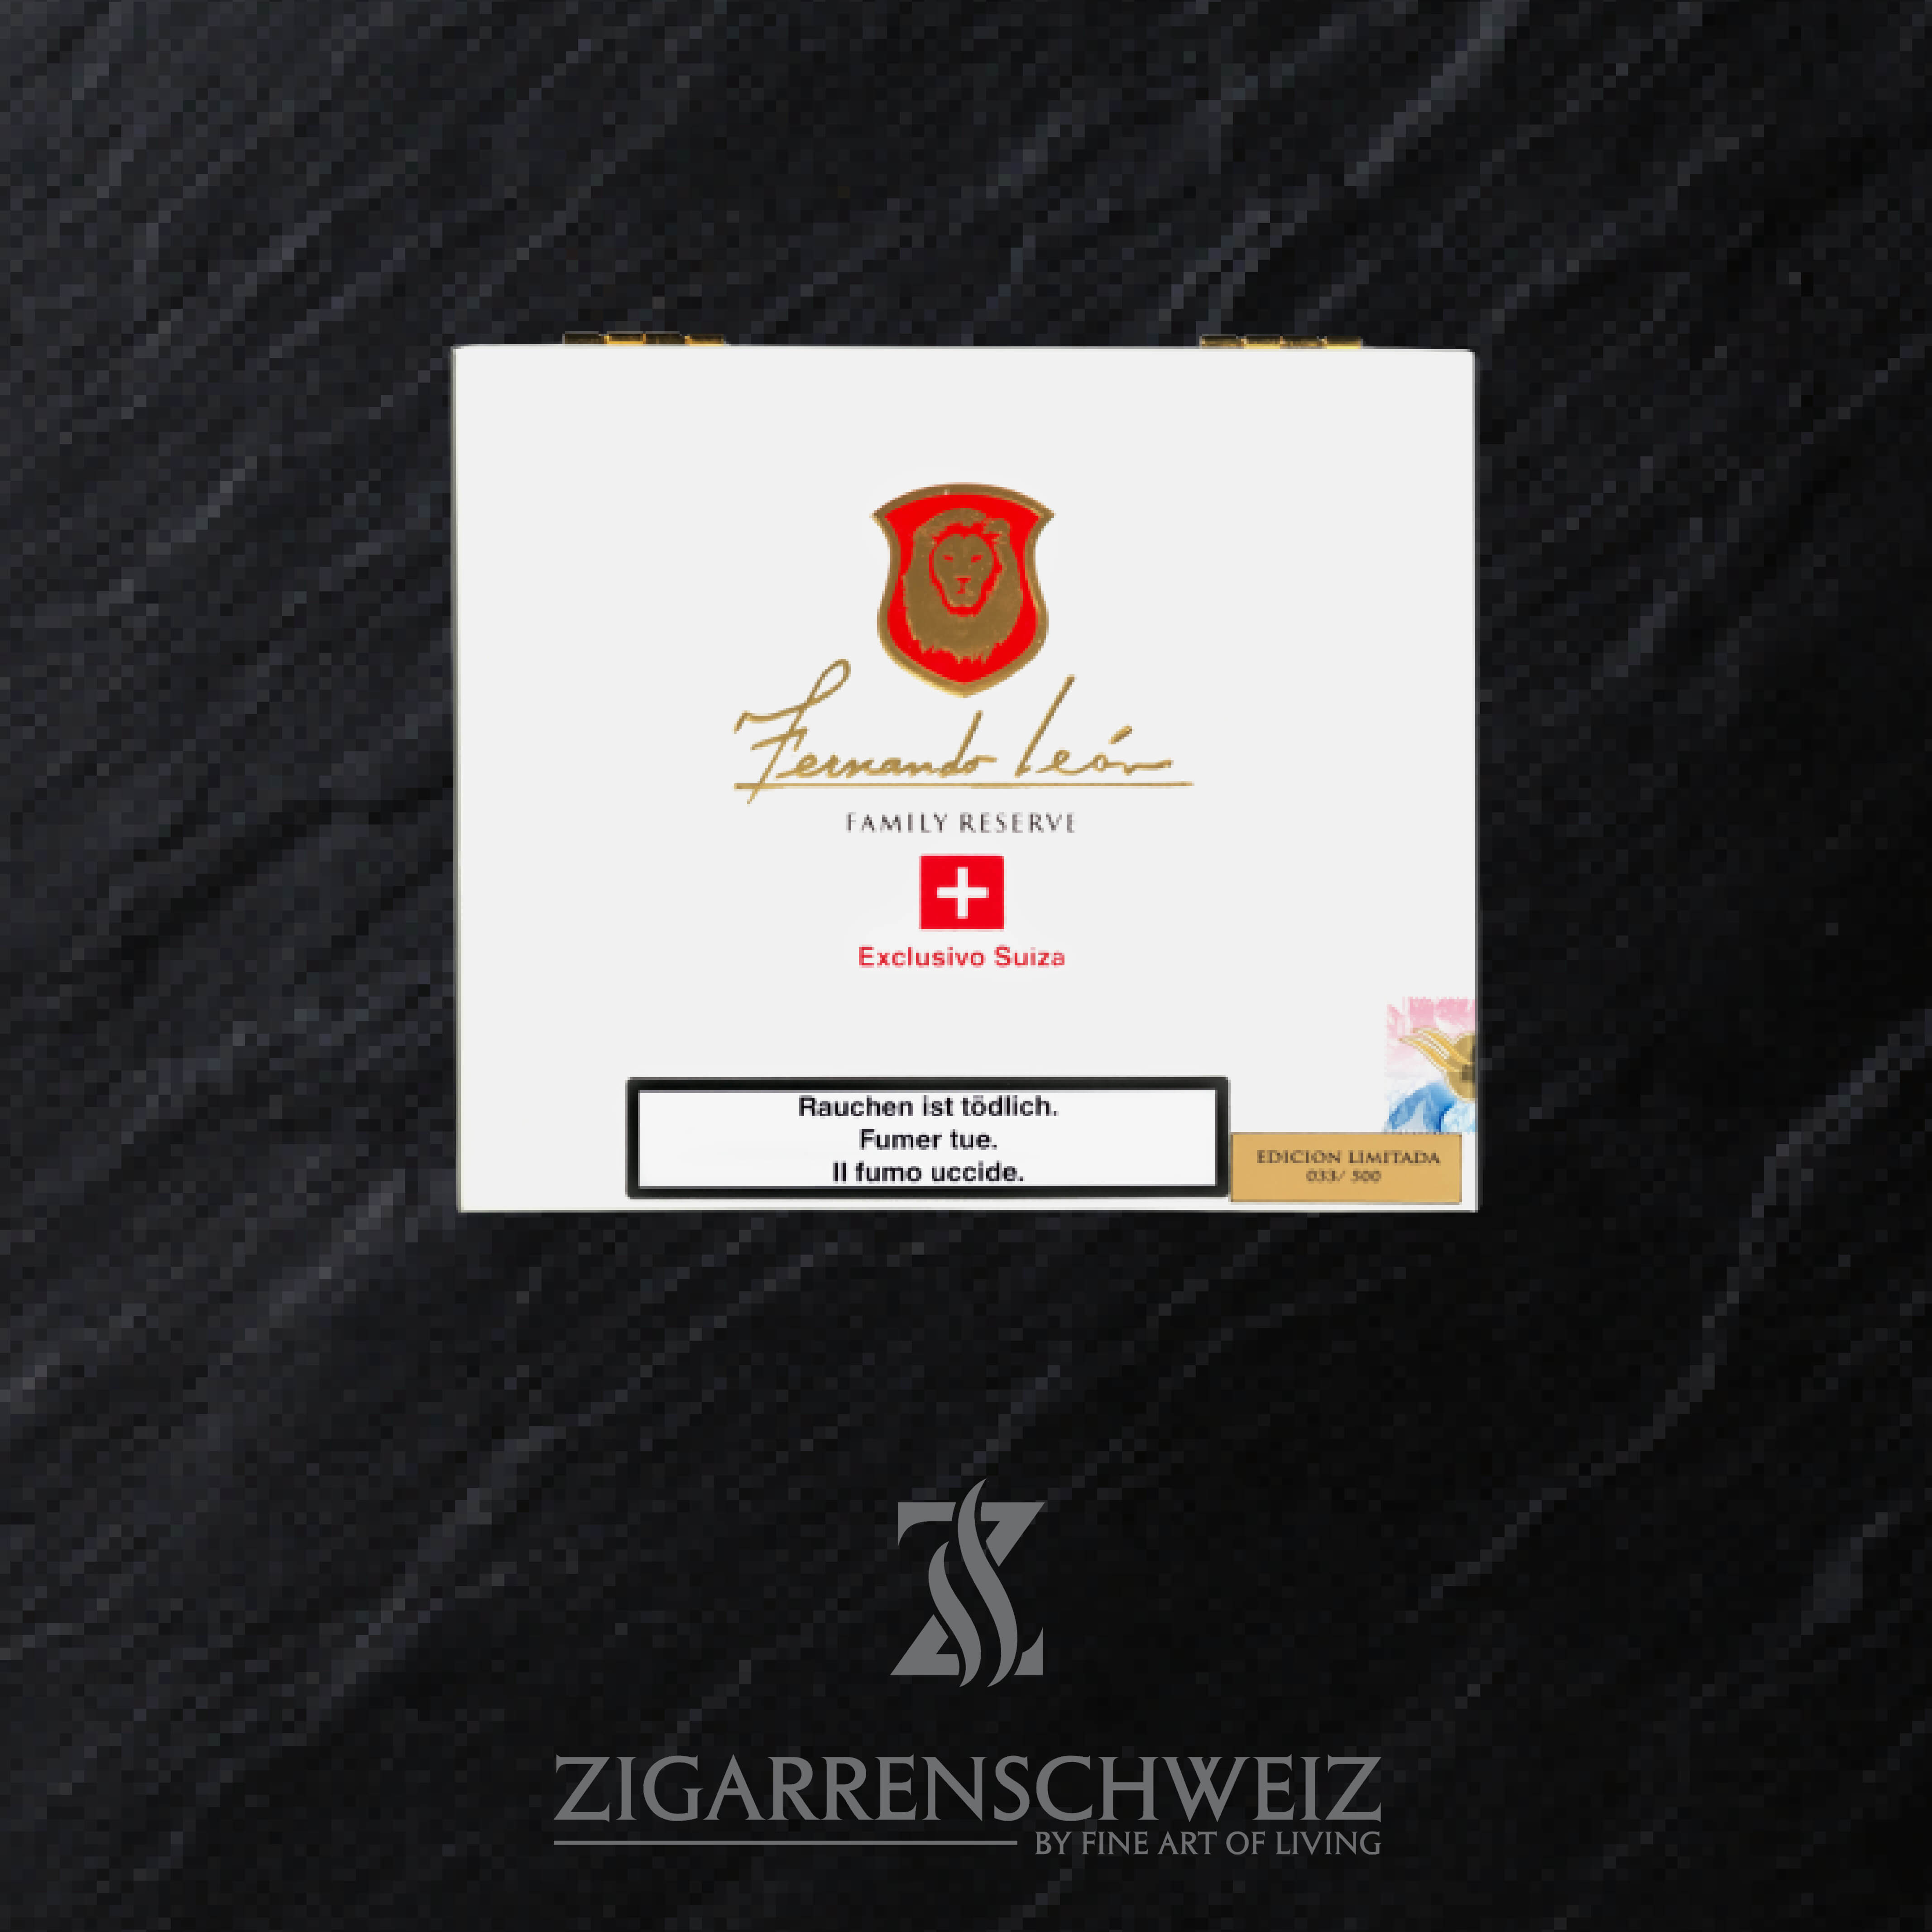 La Aurora Fernando Leon Suiza Corona Gordo Limited Edition Zigarren Kiste geschlossen